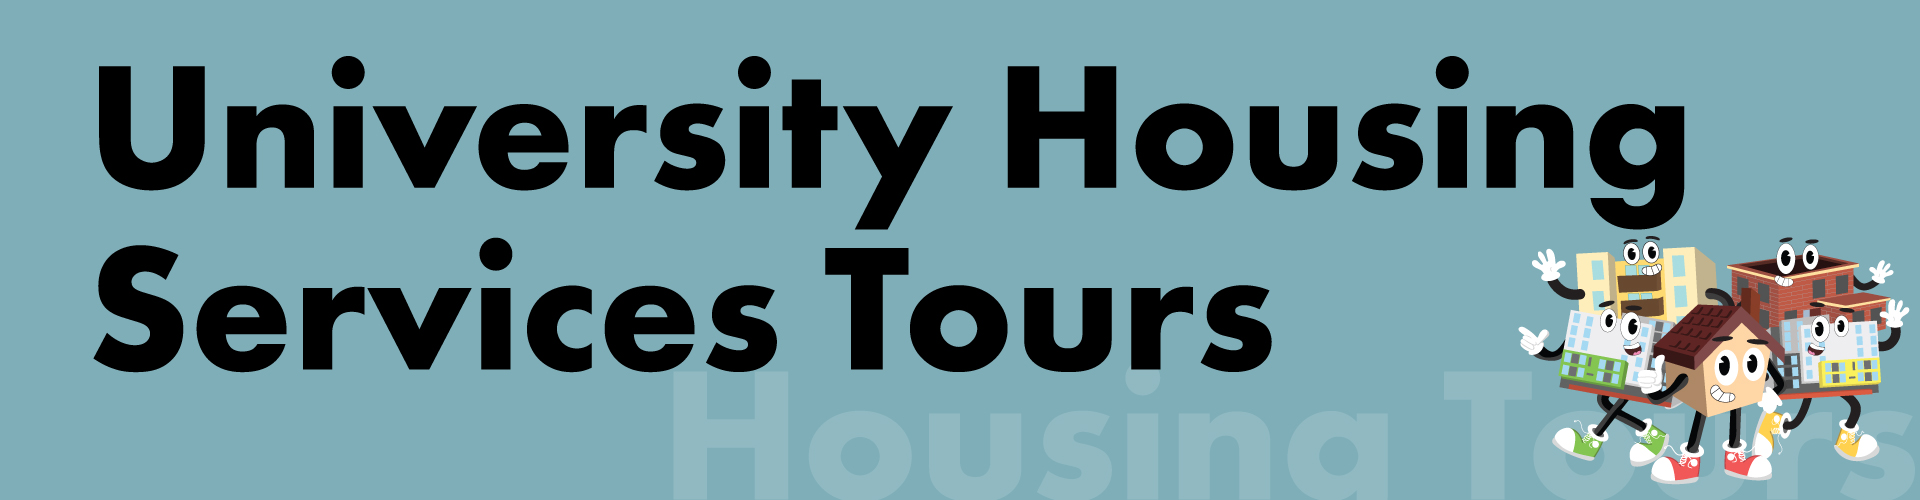 University Housing Services Tours